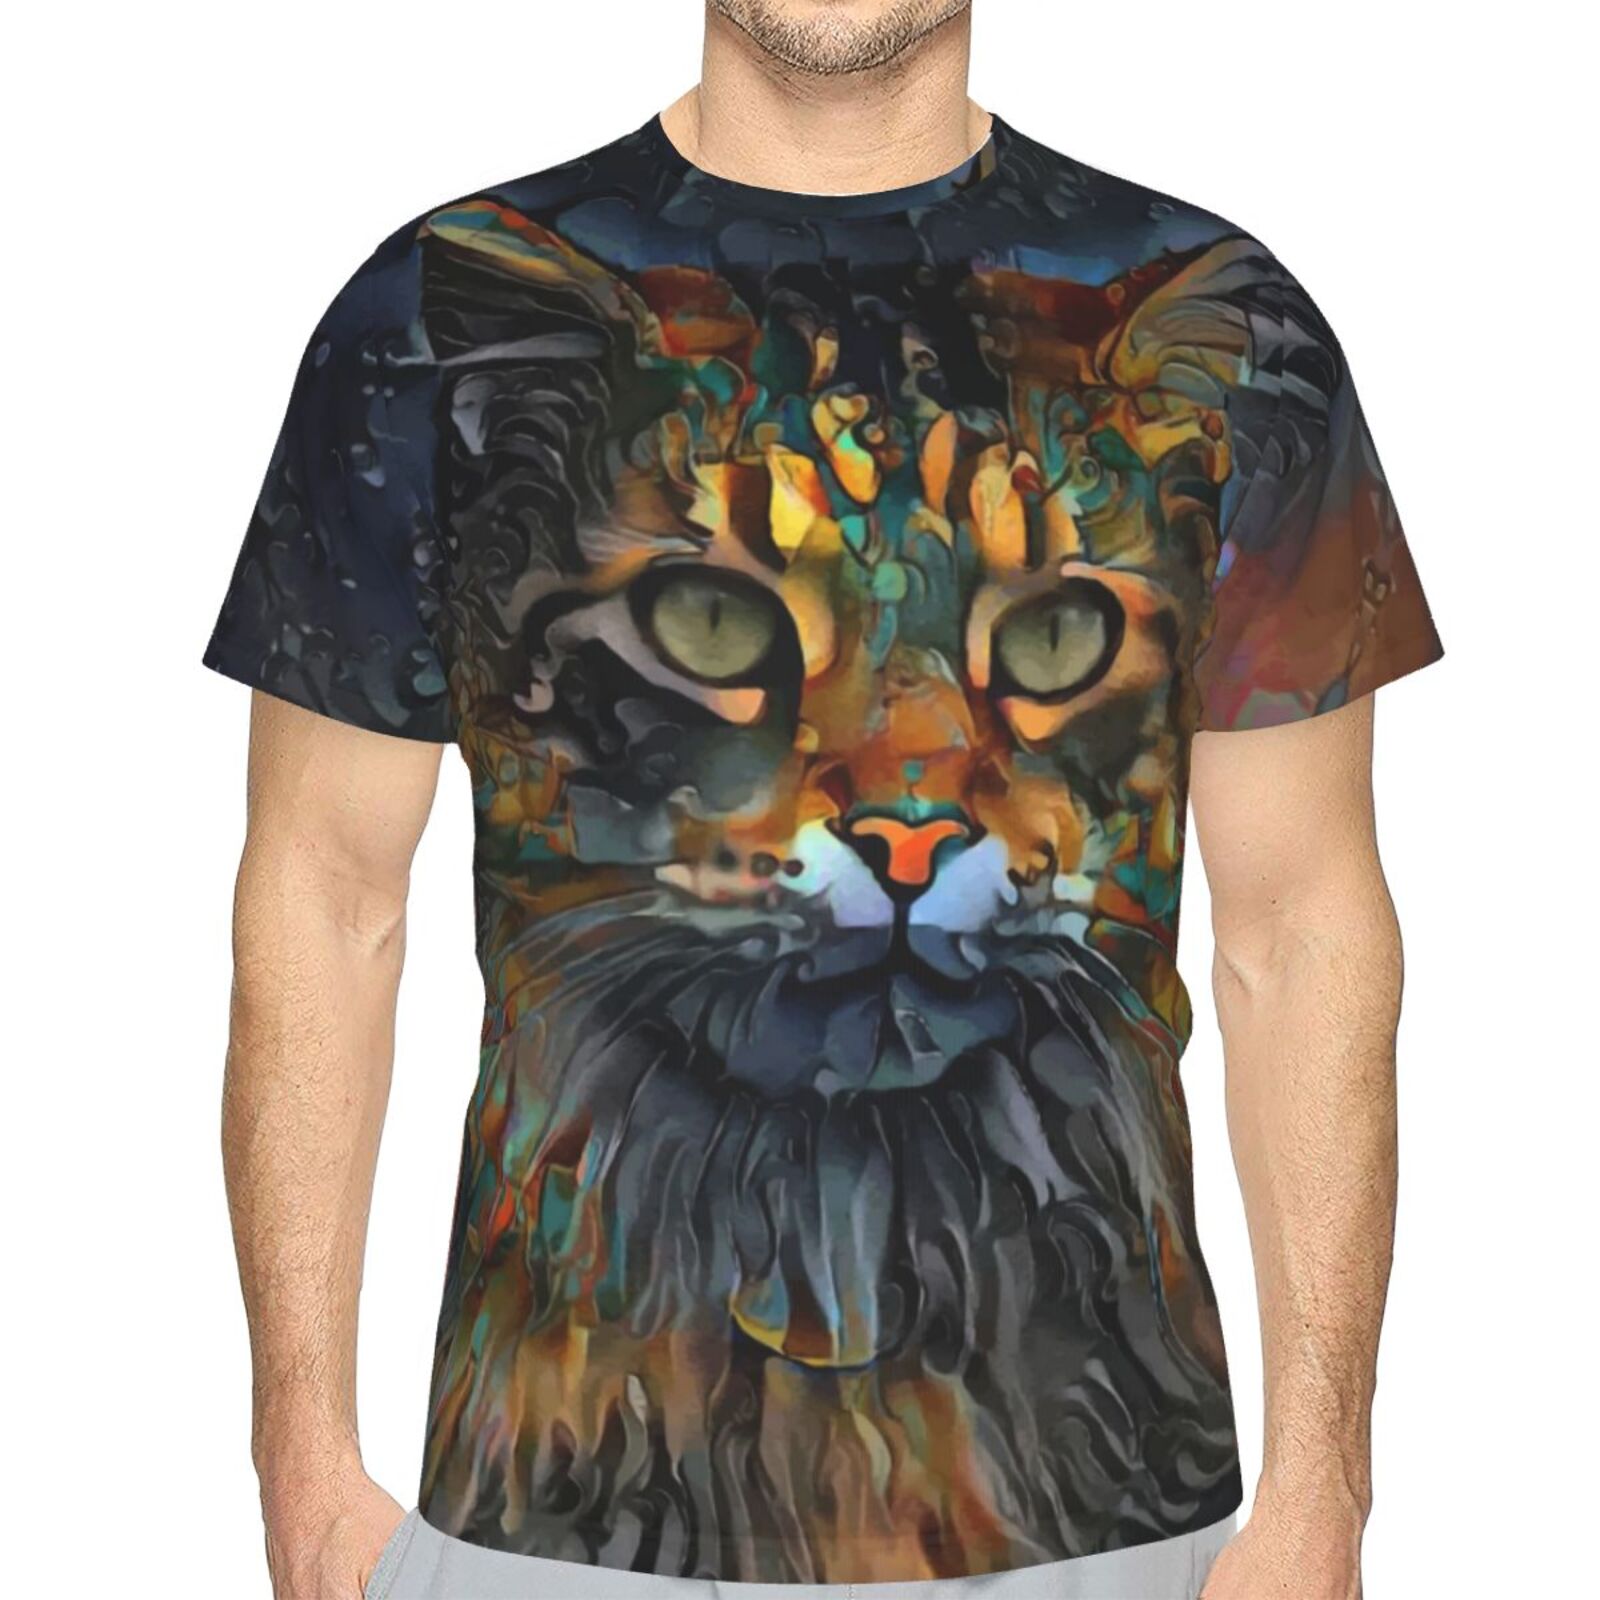 Samson Jr. Cat Mix Mdeia Elements Classic T-shirt